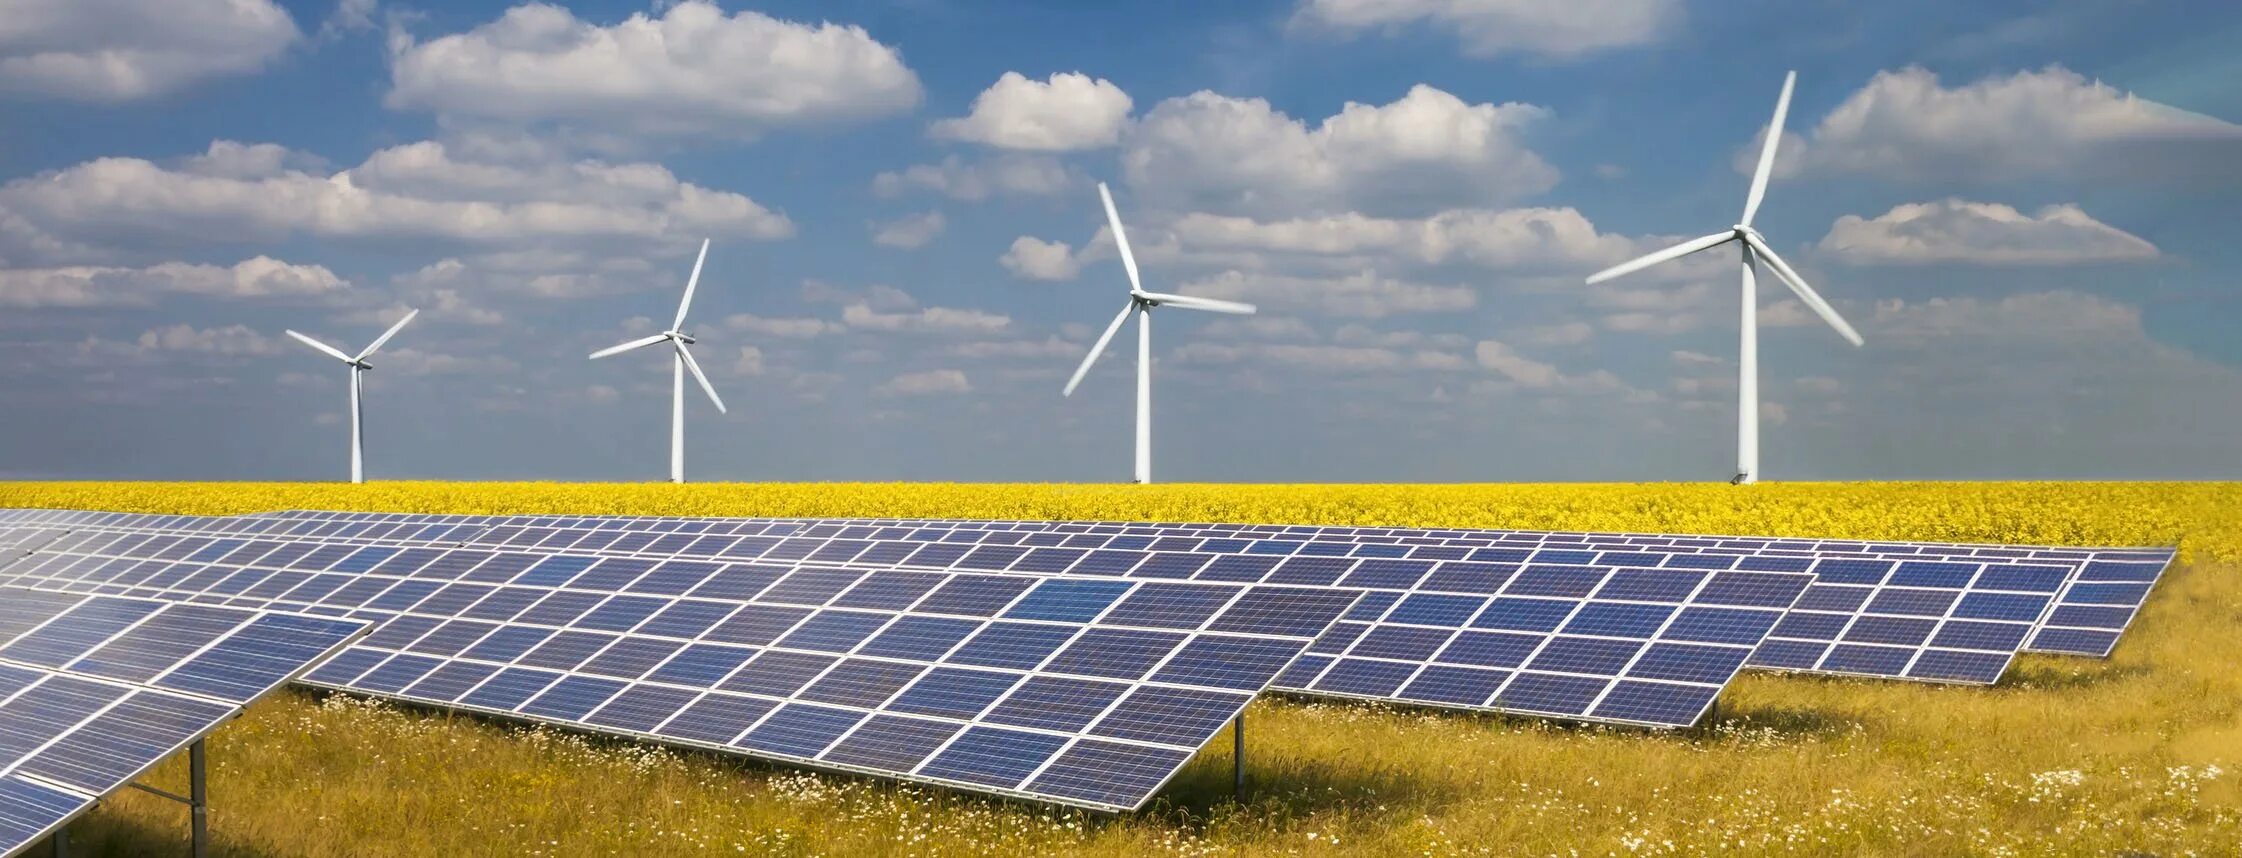 Ветряки и солнечные батареи. Альтернативные источники электроэнергии. Солнечные батареи и ветрогенераторы. Возобновляемые источники энергии.